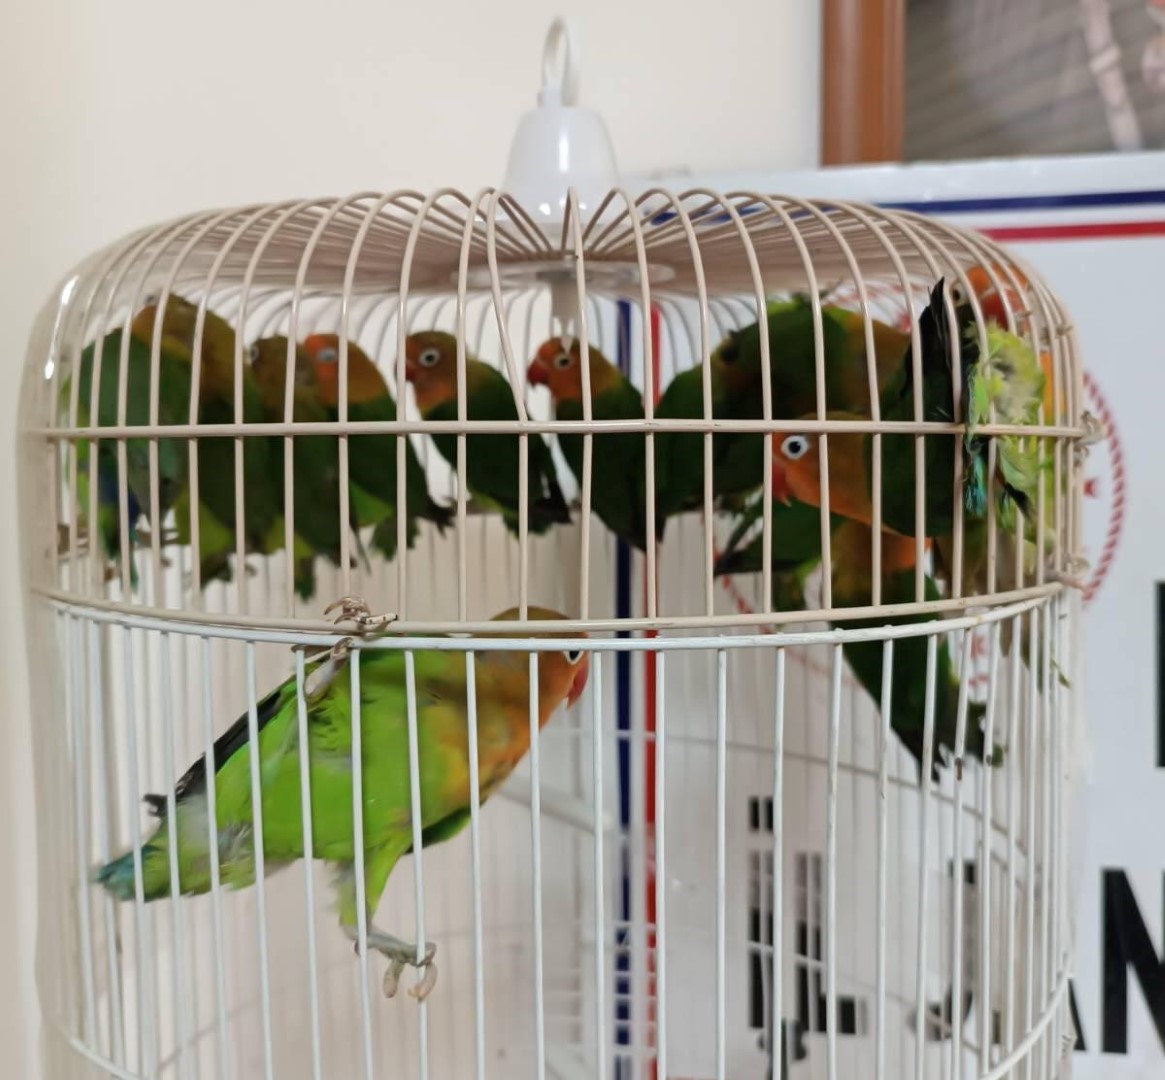 Manisa’da Satışı Yasak Papağan Ele Geçirildi (4)